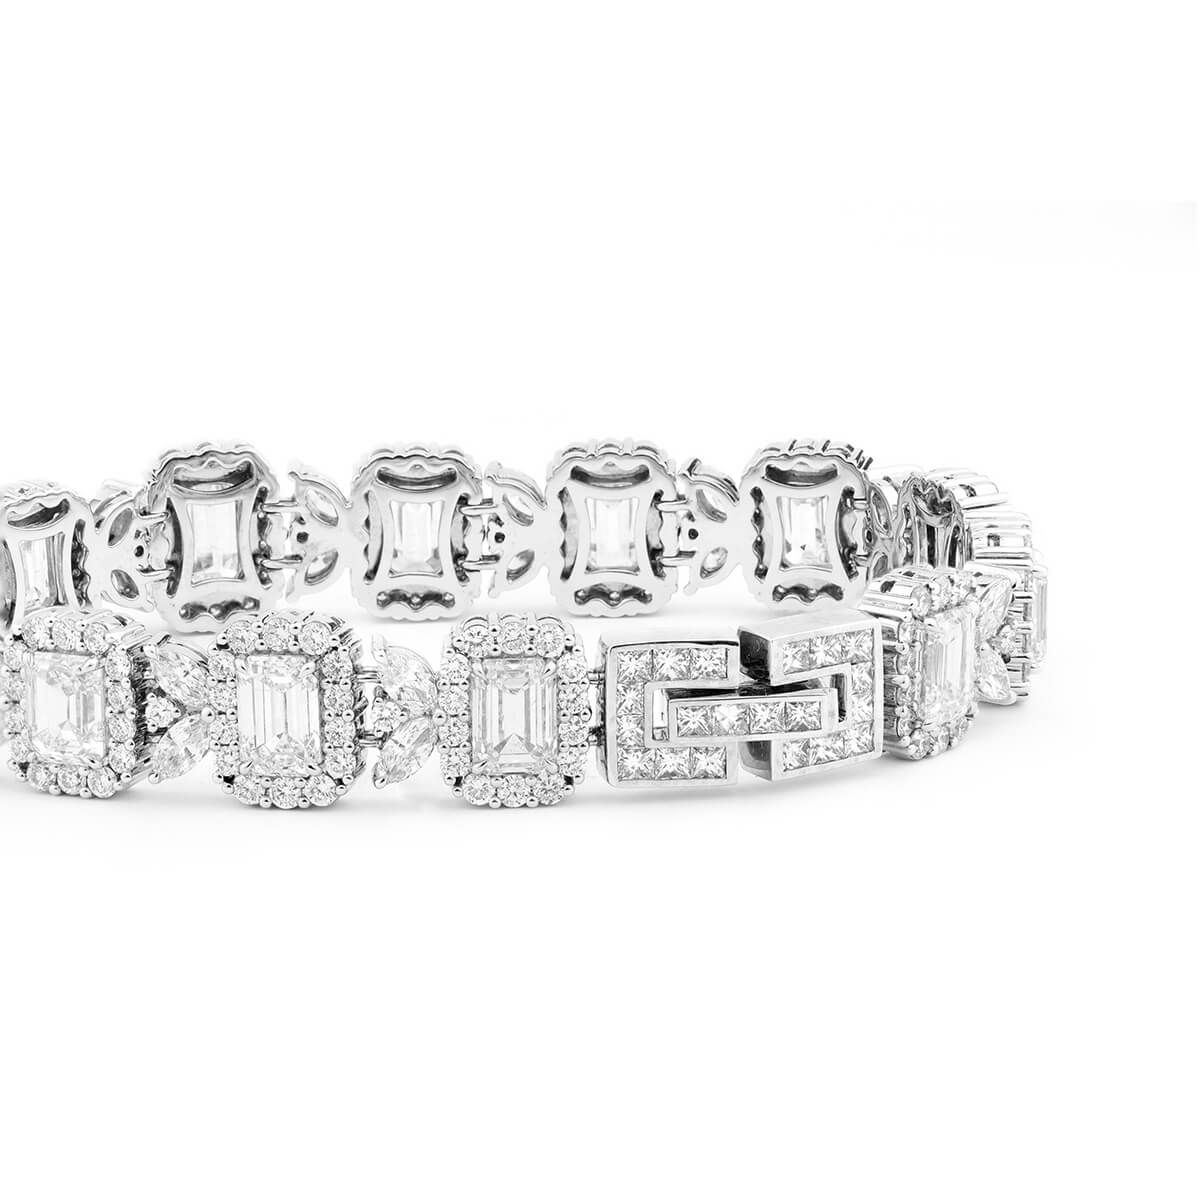  White Diamond Bracelet, 20.23 Ct. TW, Emerald shape, GIA Certified, JCBW05411544